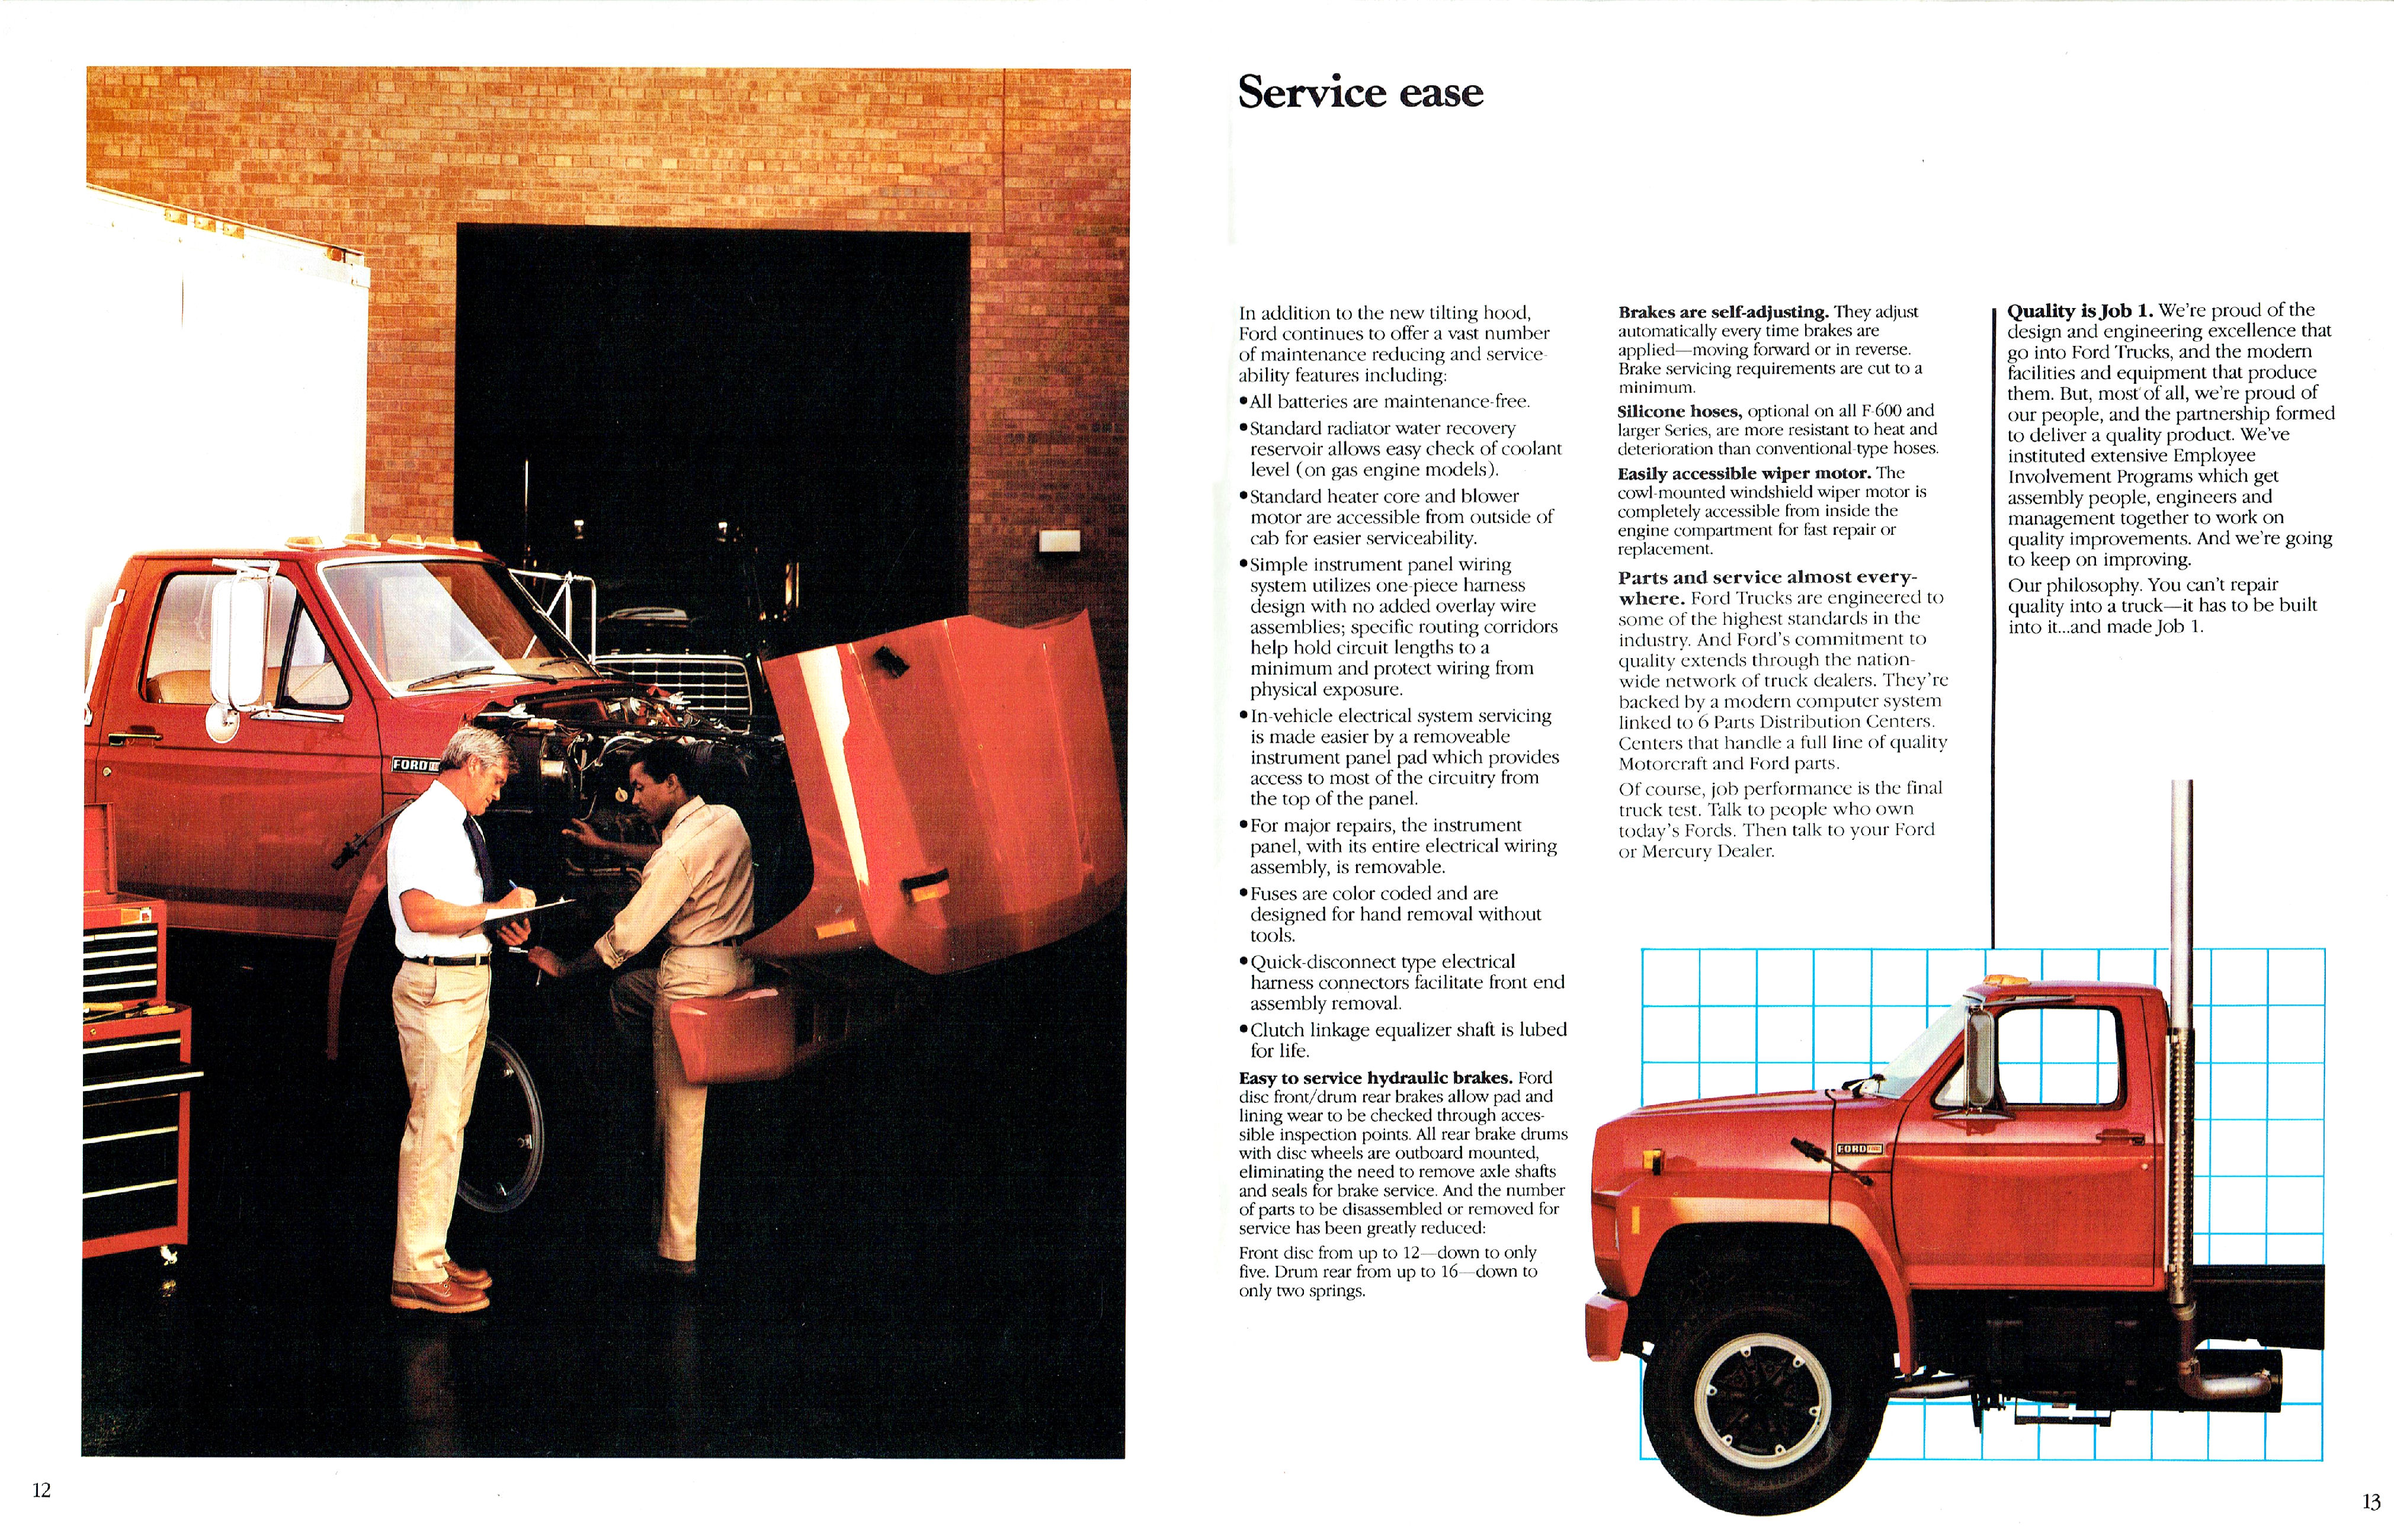 1984 Ford F-Series Trucks (Cdn)-12-13